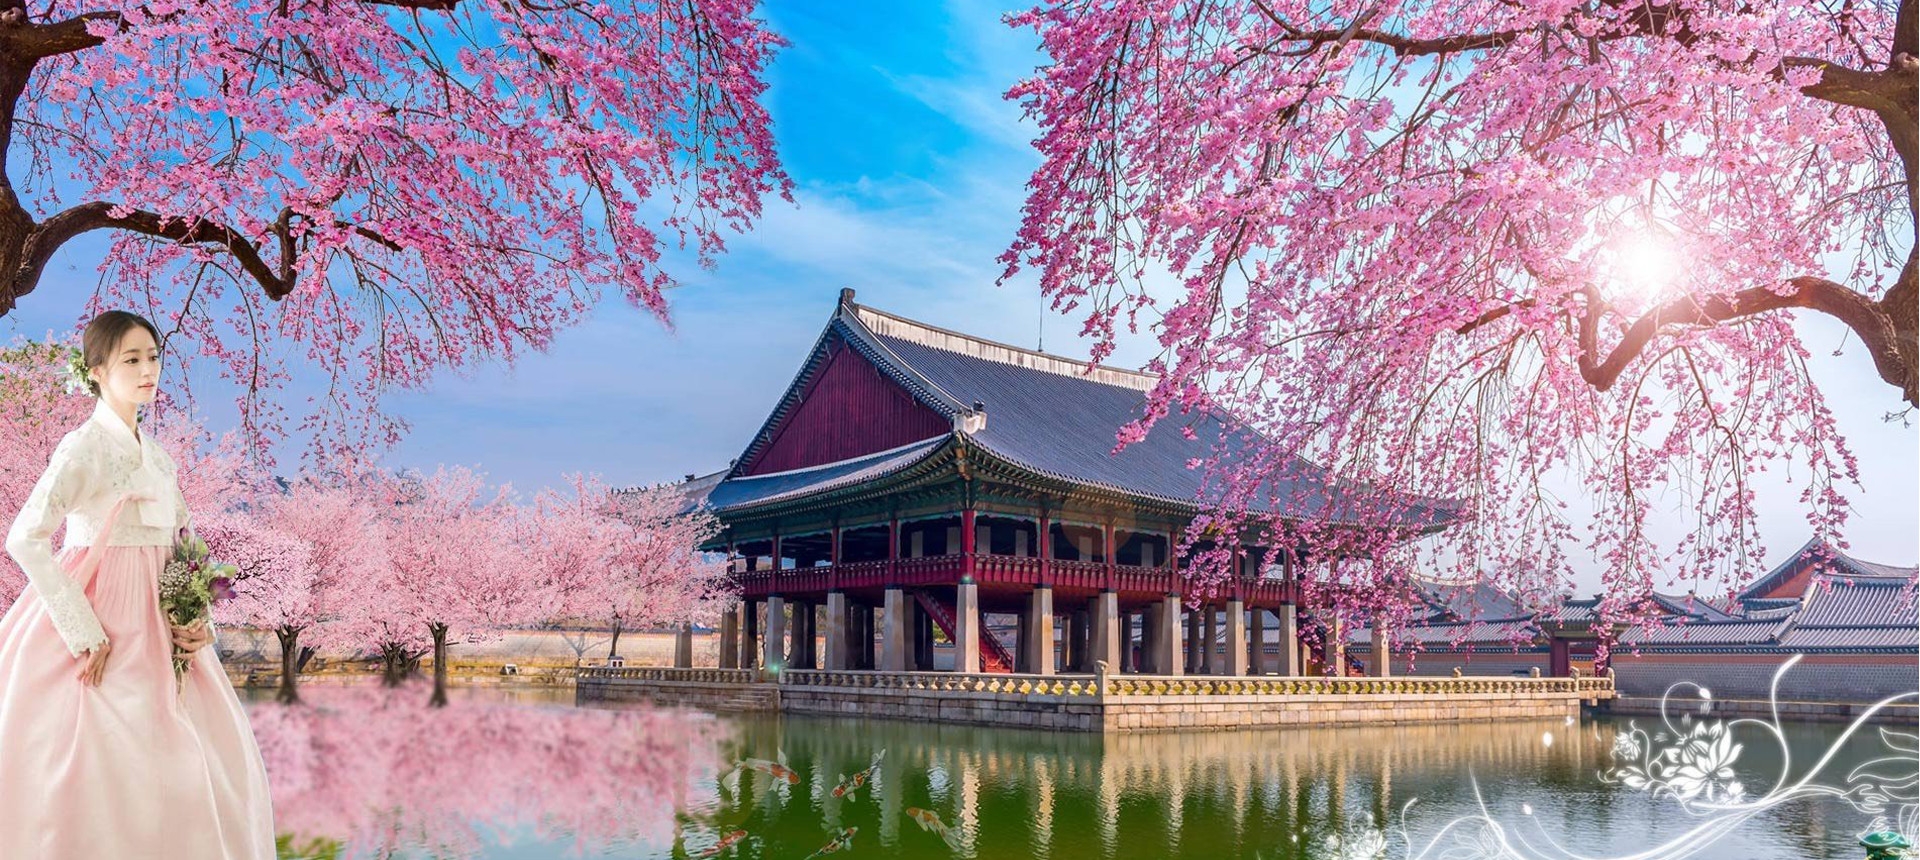 Du lịch Hàn Quốc mùa Hoa anh đào